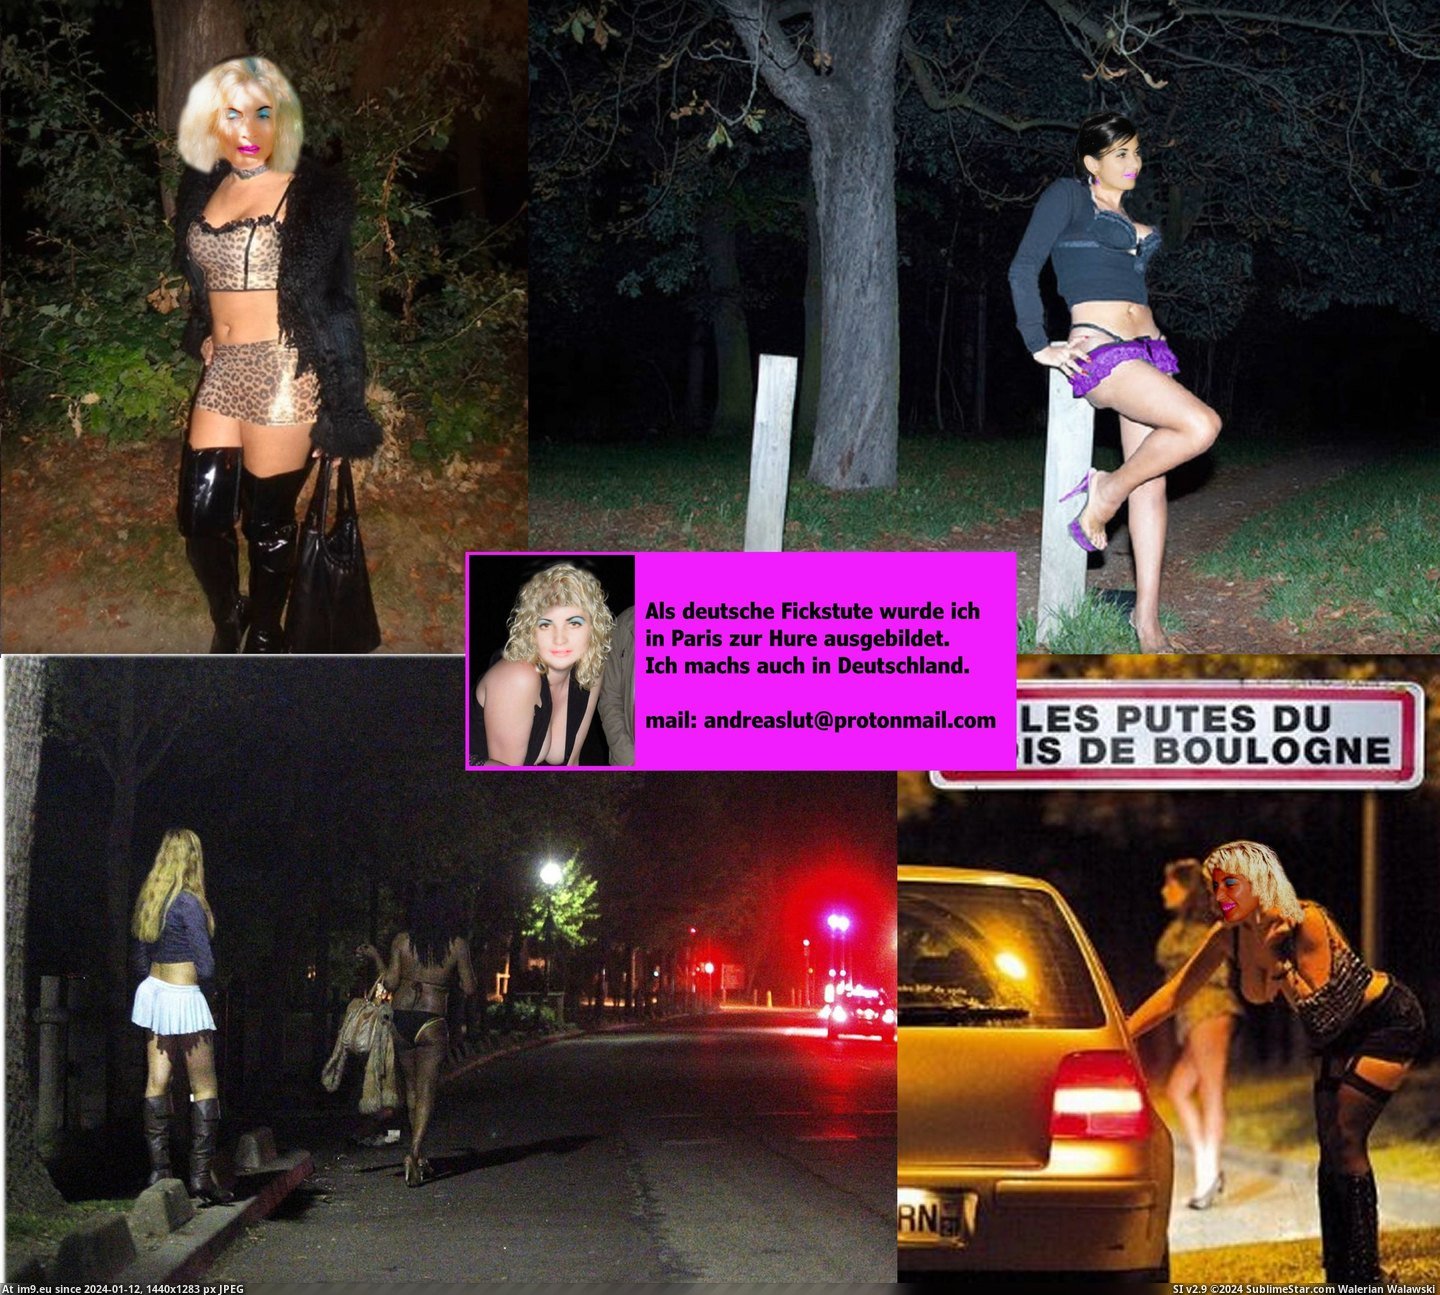 #Slut #Whore #Fotze #Prostituee #Webwhore #Nutte #Pute #Andrea #Strich #Hure #Putain Andrea Bois de Boulogne putes.2jpg Pic. (Image of album ))